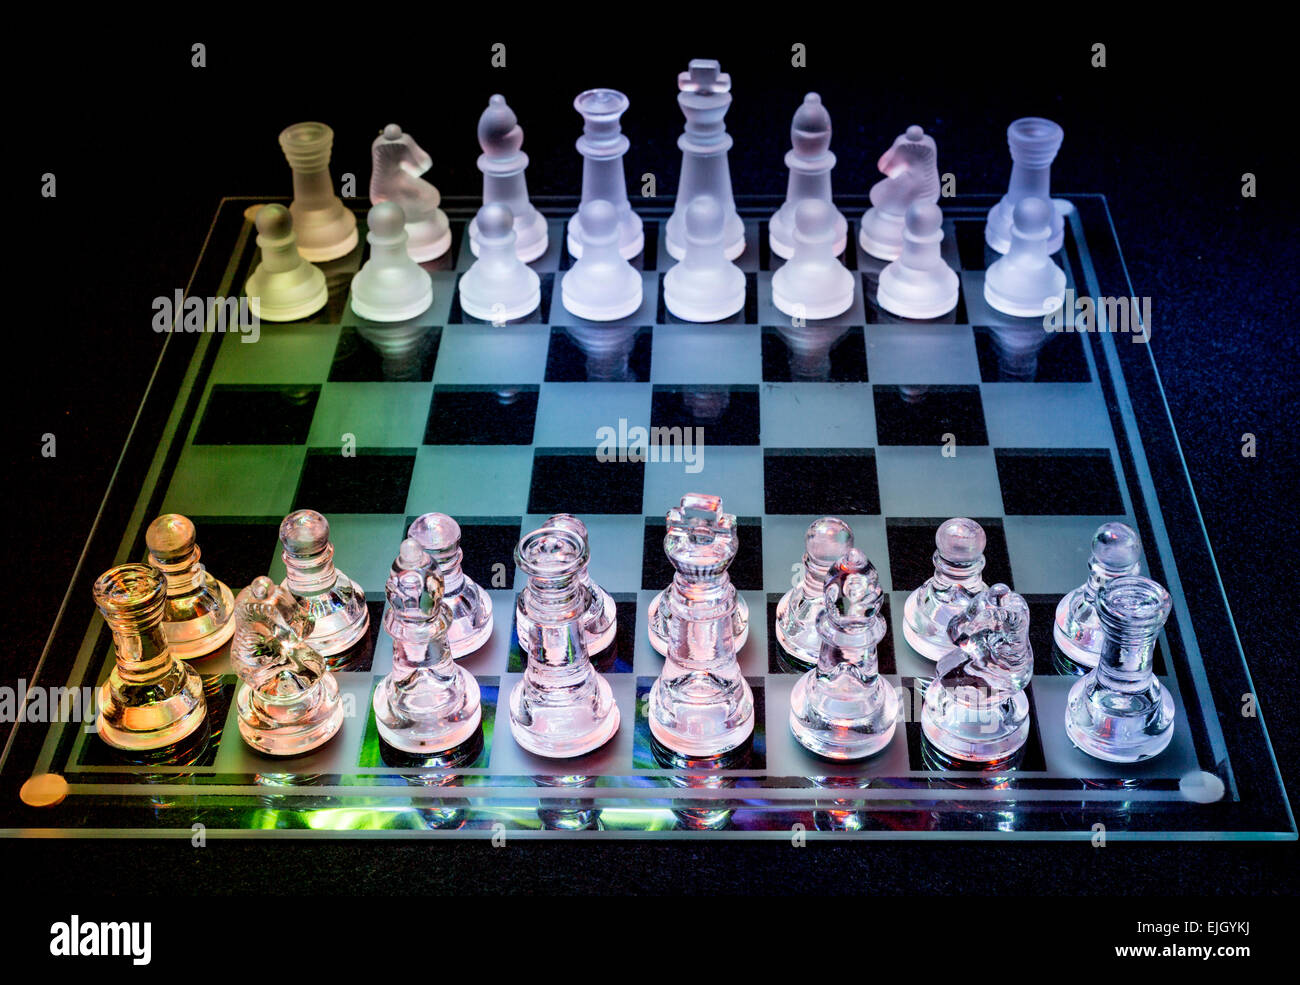 Juego de ajedrez de cristal fotografías e imágenes de alta resolución -  Alamy